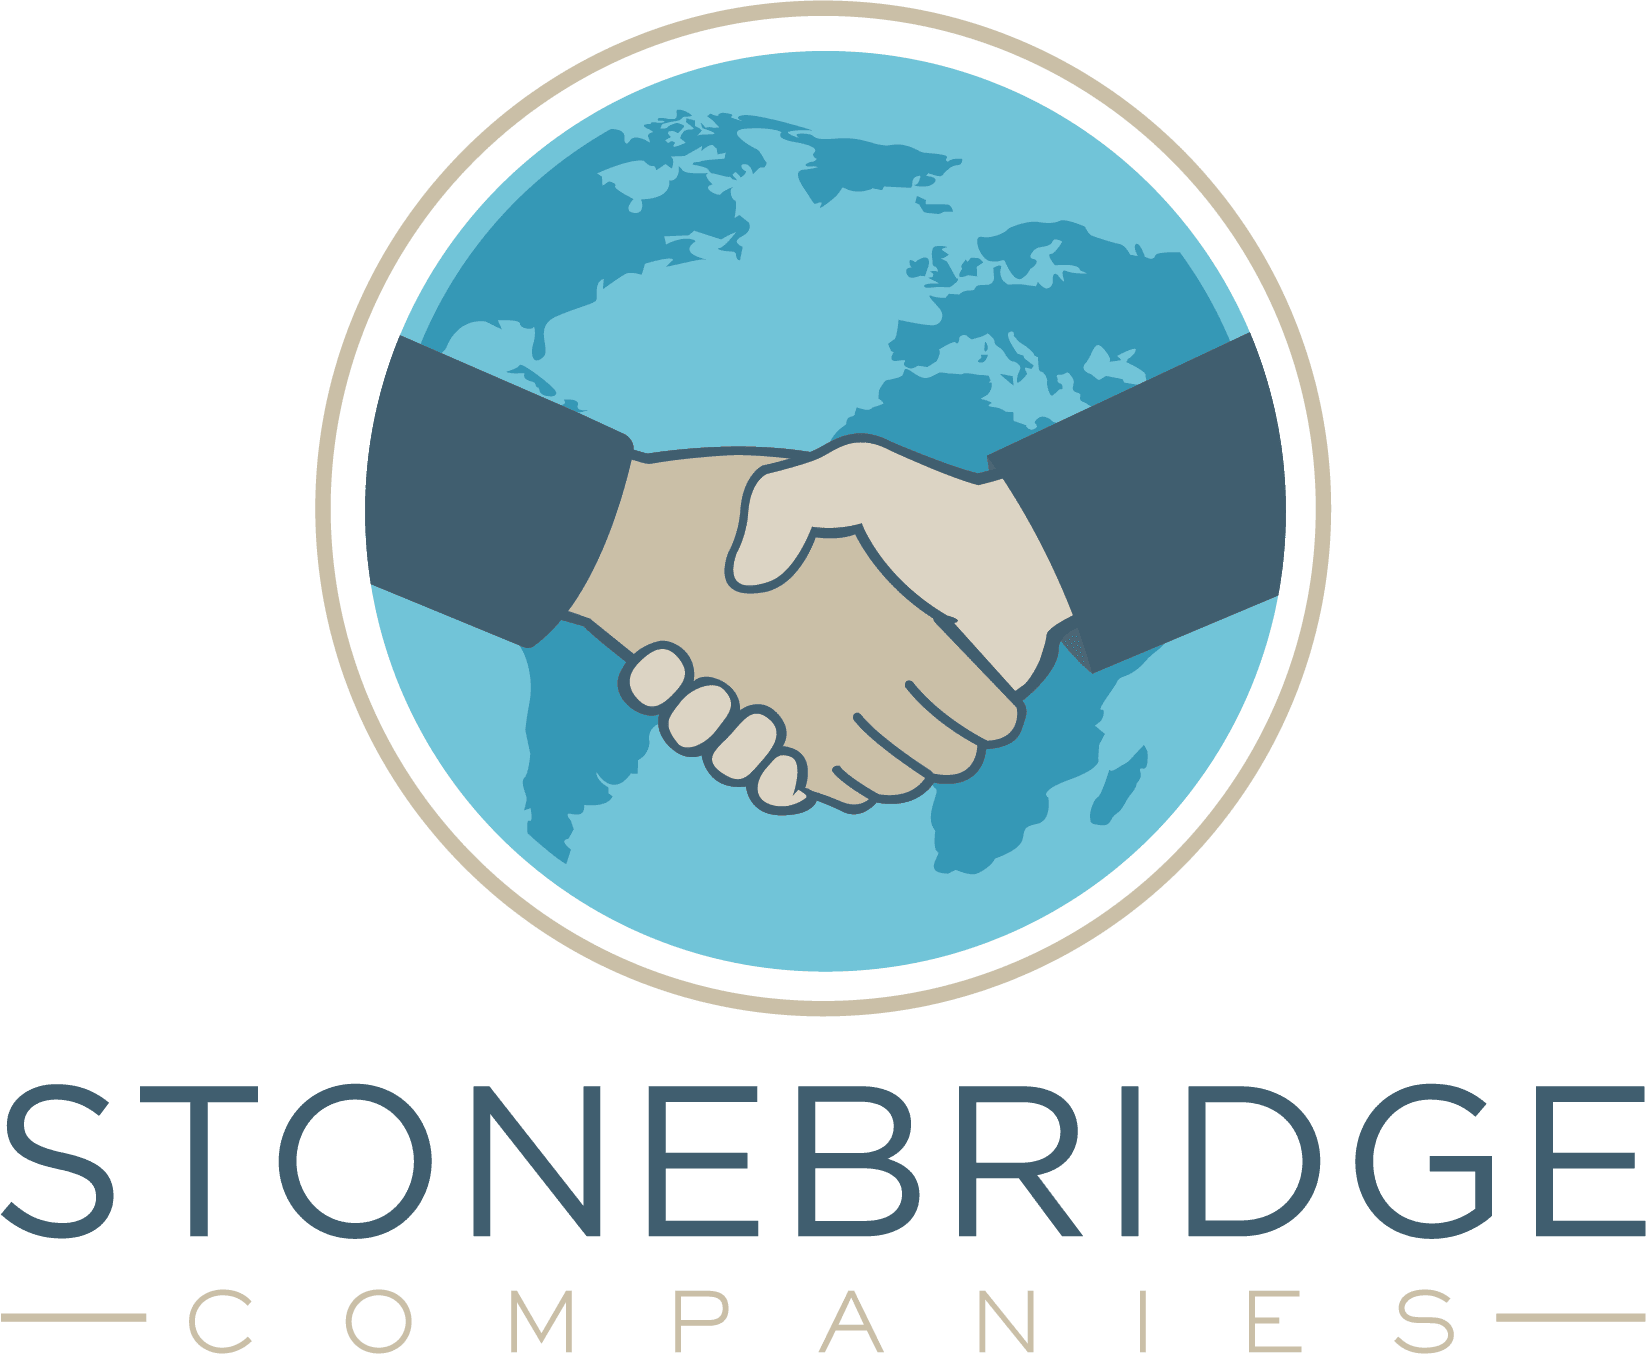 Stonebridge Companies logo